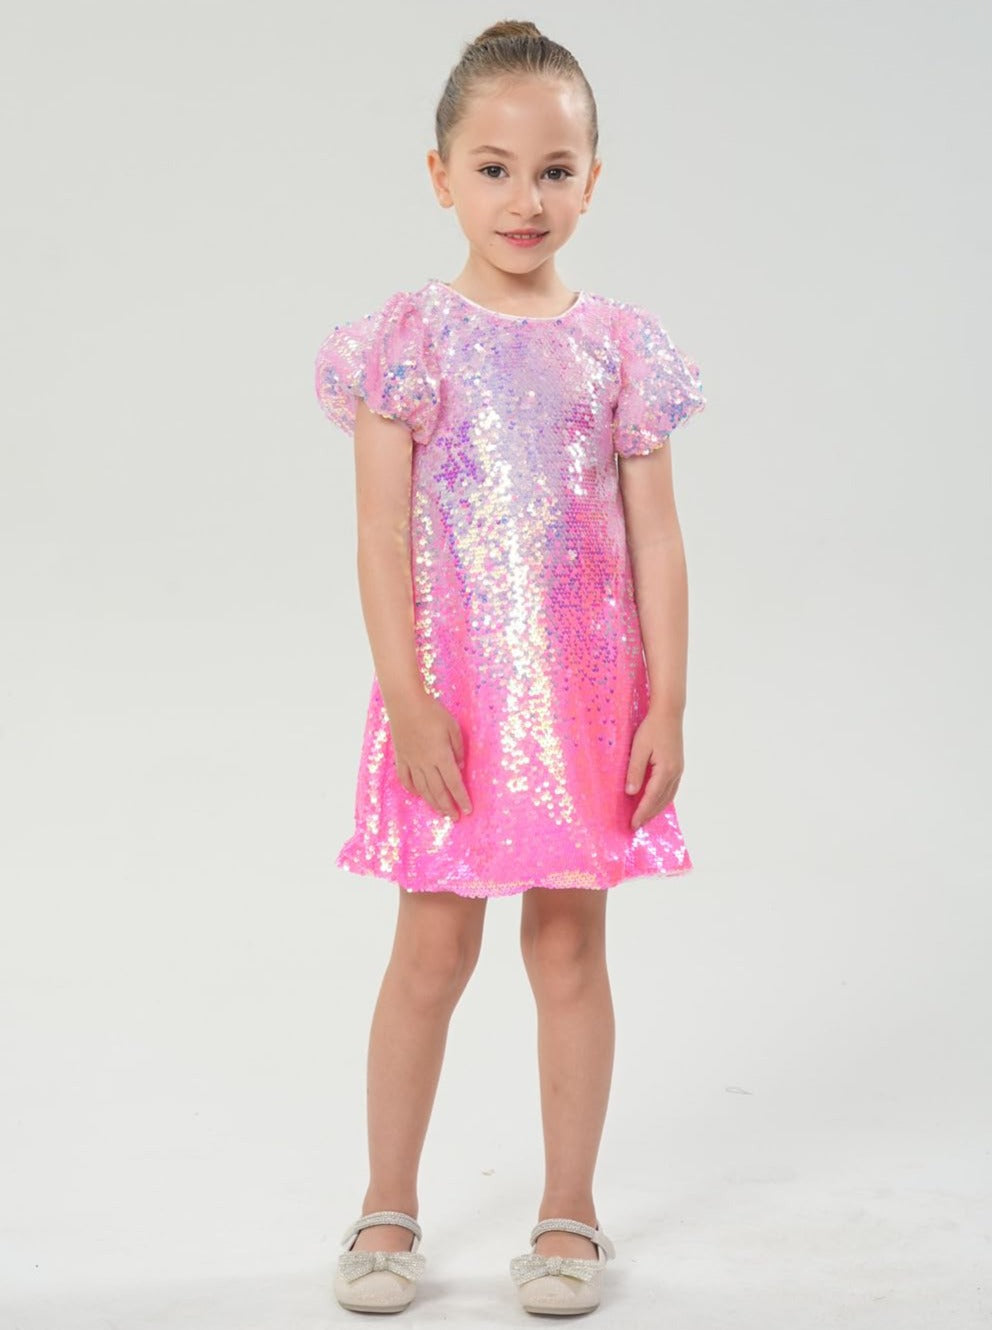 Ombre Sparkle Bubble Gum Pink Sequin Girl Dress